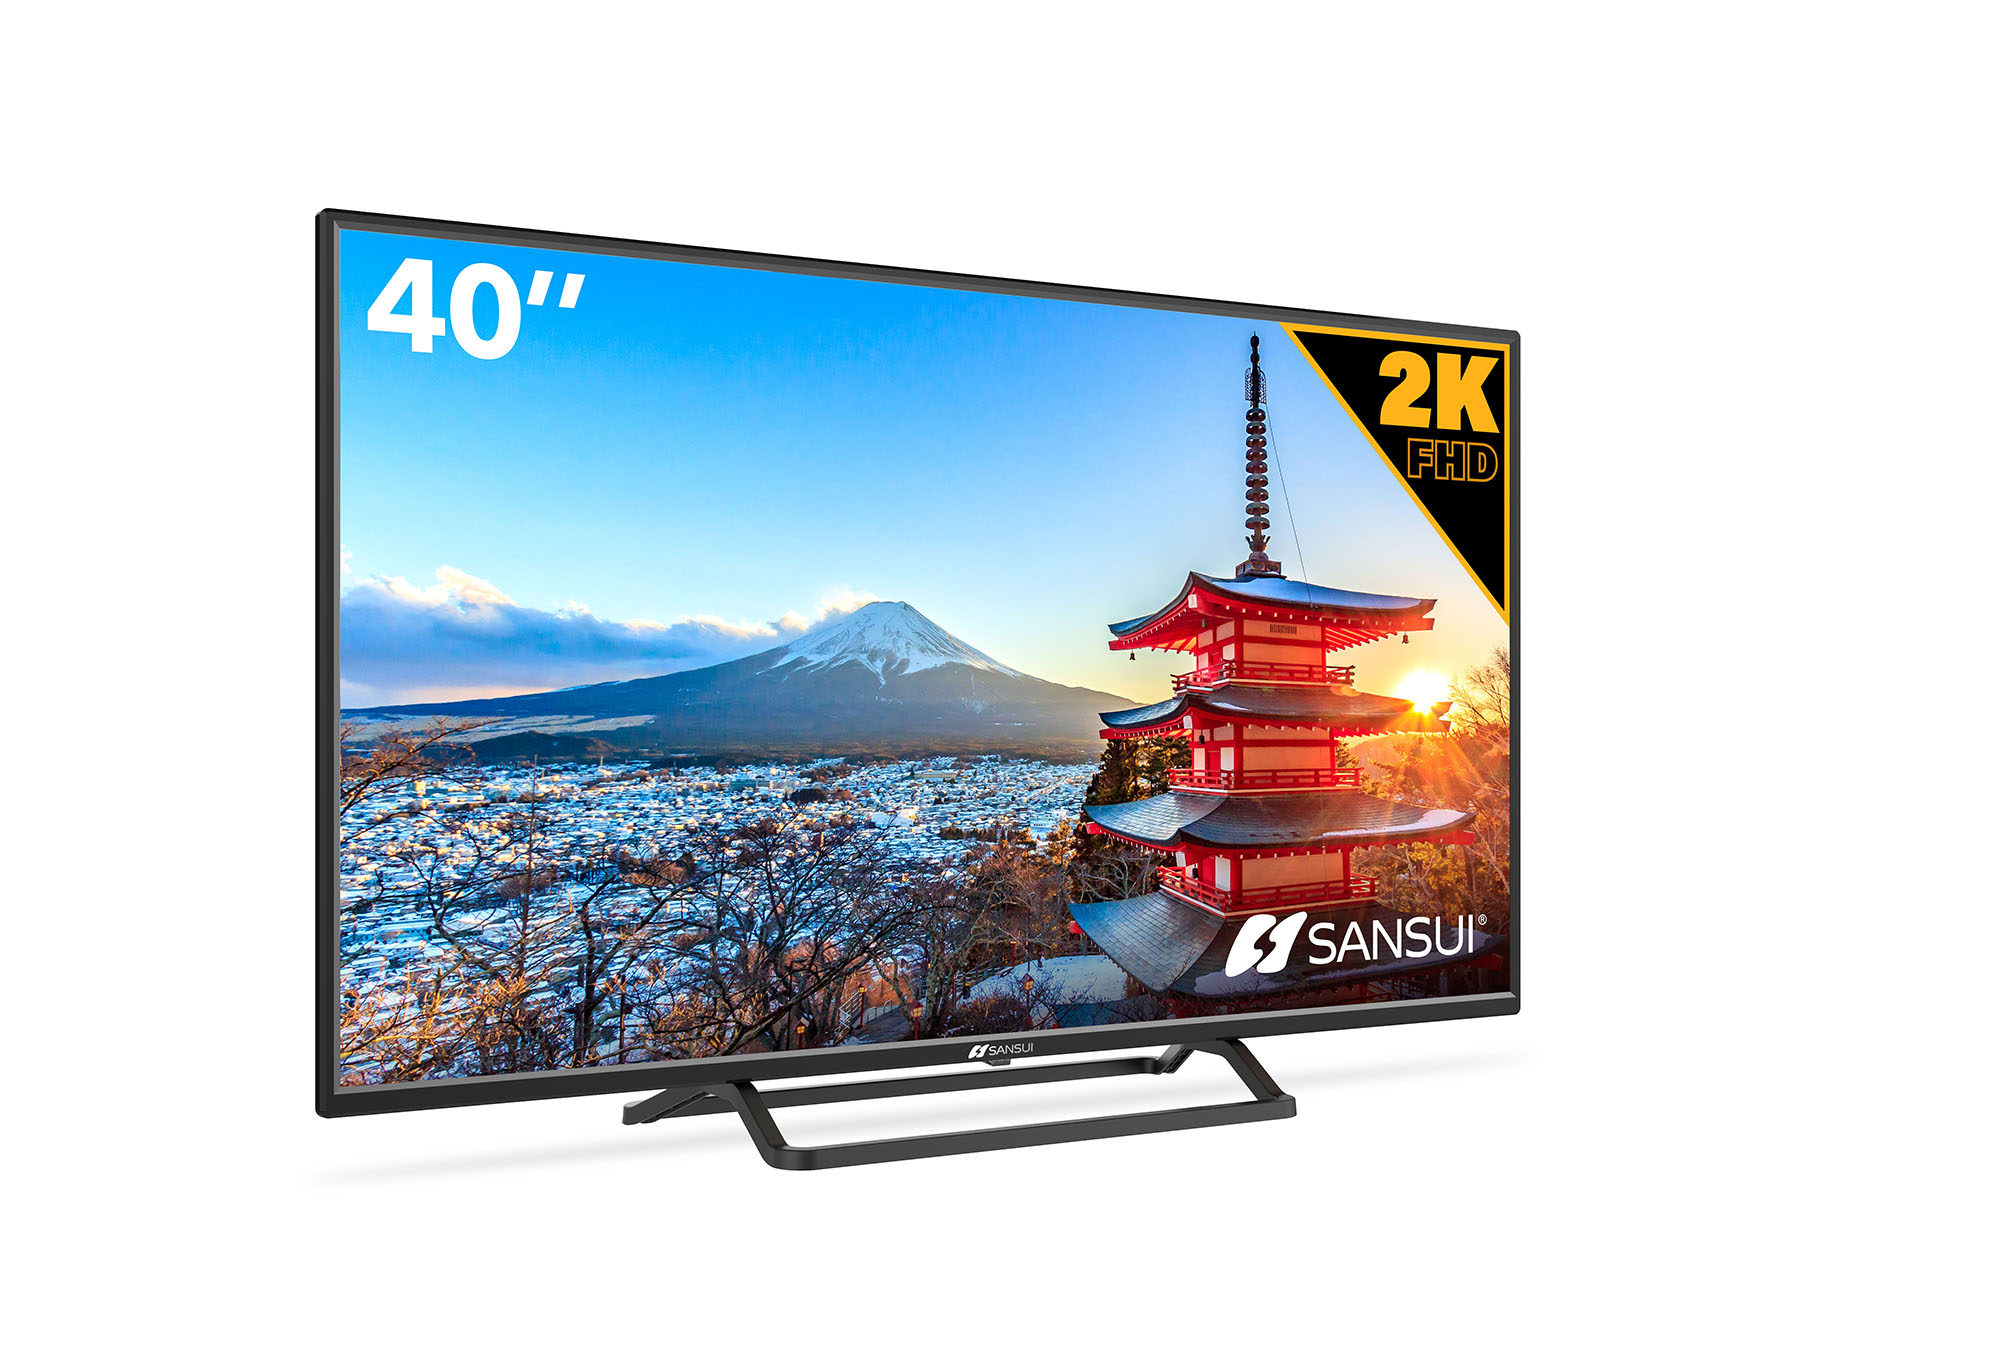 40 Basic LED TV, Basic-Sansui (US) - Smart TV, 4K HDR